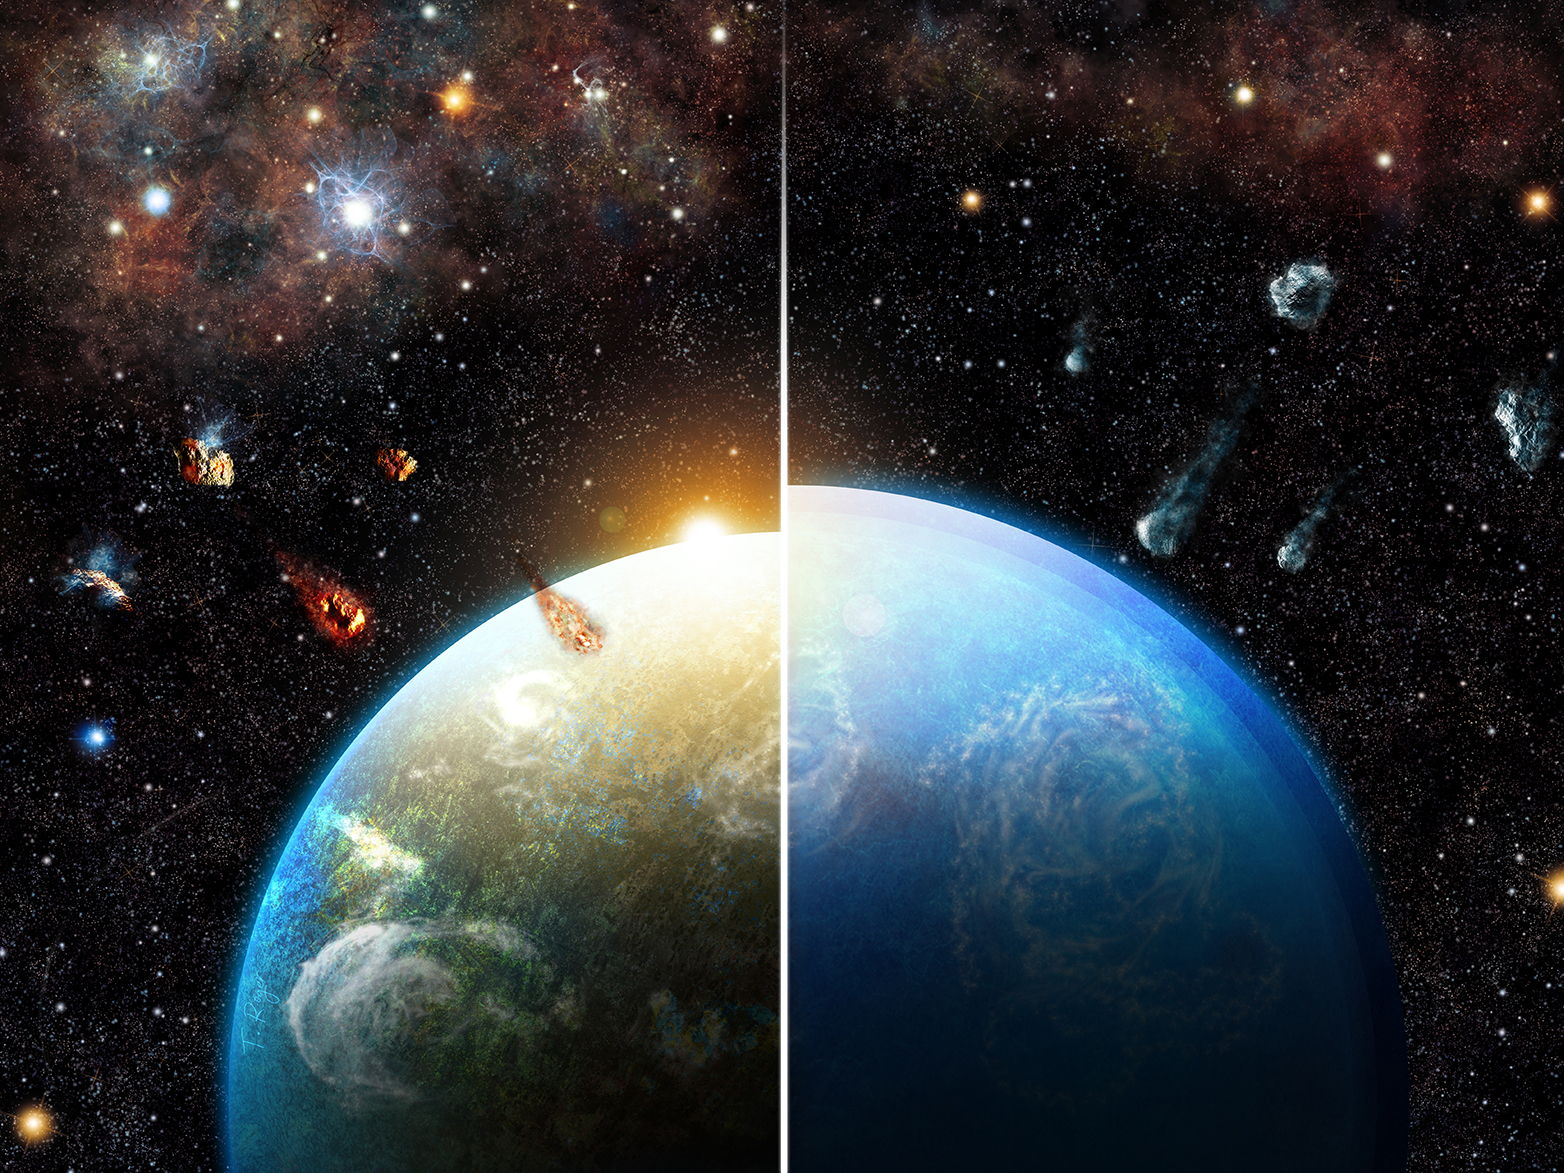 Vergrösserte Ansicht: Entstehen Planetensysteme in dichten Regionen, wo massereiche Sterne geformt wurden, so erben sie erhebliche Mengen an Aluminium-26, das die Planeten-Bausteine vor der Akkumulation austrocknet (links). Planeten in Regionen mit Sternen geringer Masse sammeln hingegen wasserreiche Bausteine an und werden zu Ozeanwelten (rechts). (Grafik: Thibaut Roger)